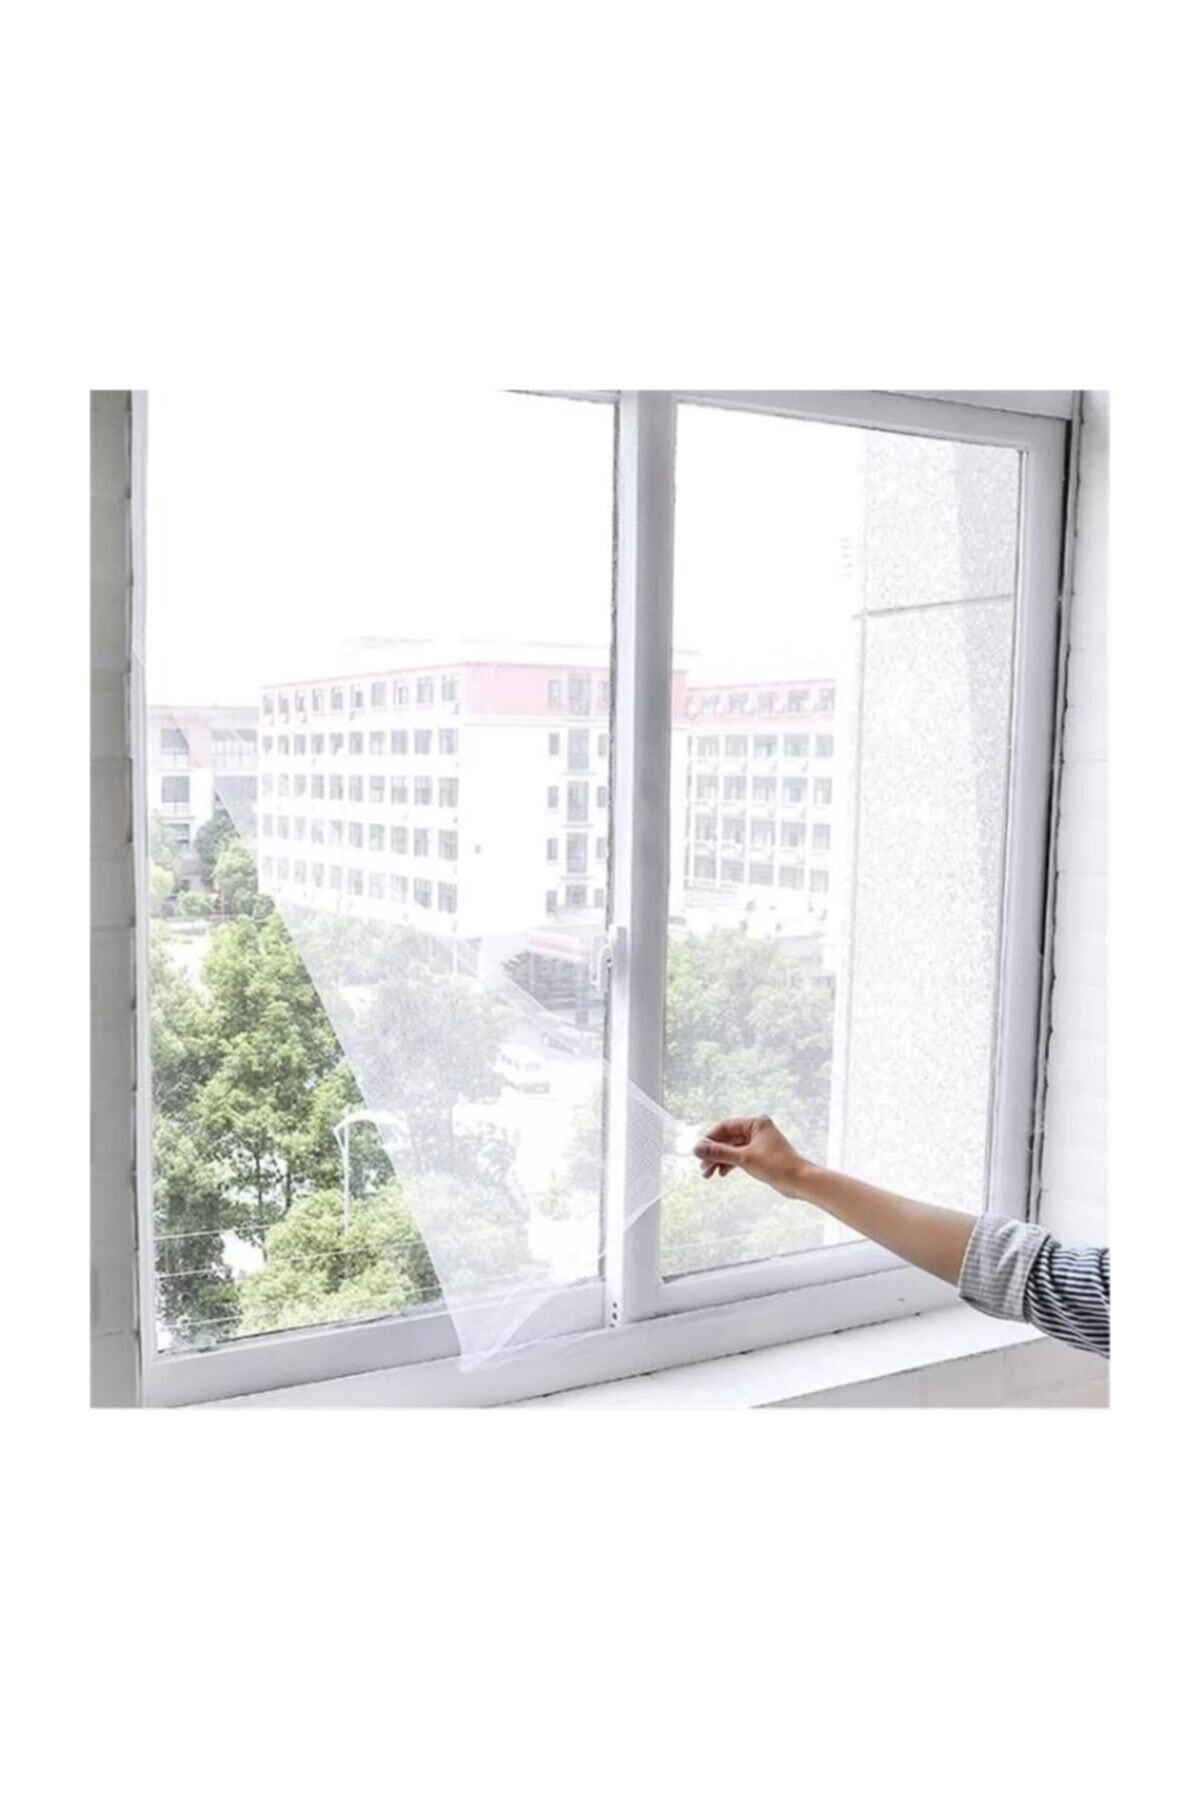 Kayra Pencere Sinekliği Kolay Yapışkanlı Sineklik Ev 75 X 125 1 Adet Hazır Sineklik